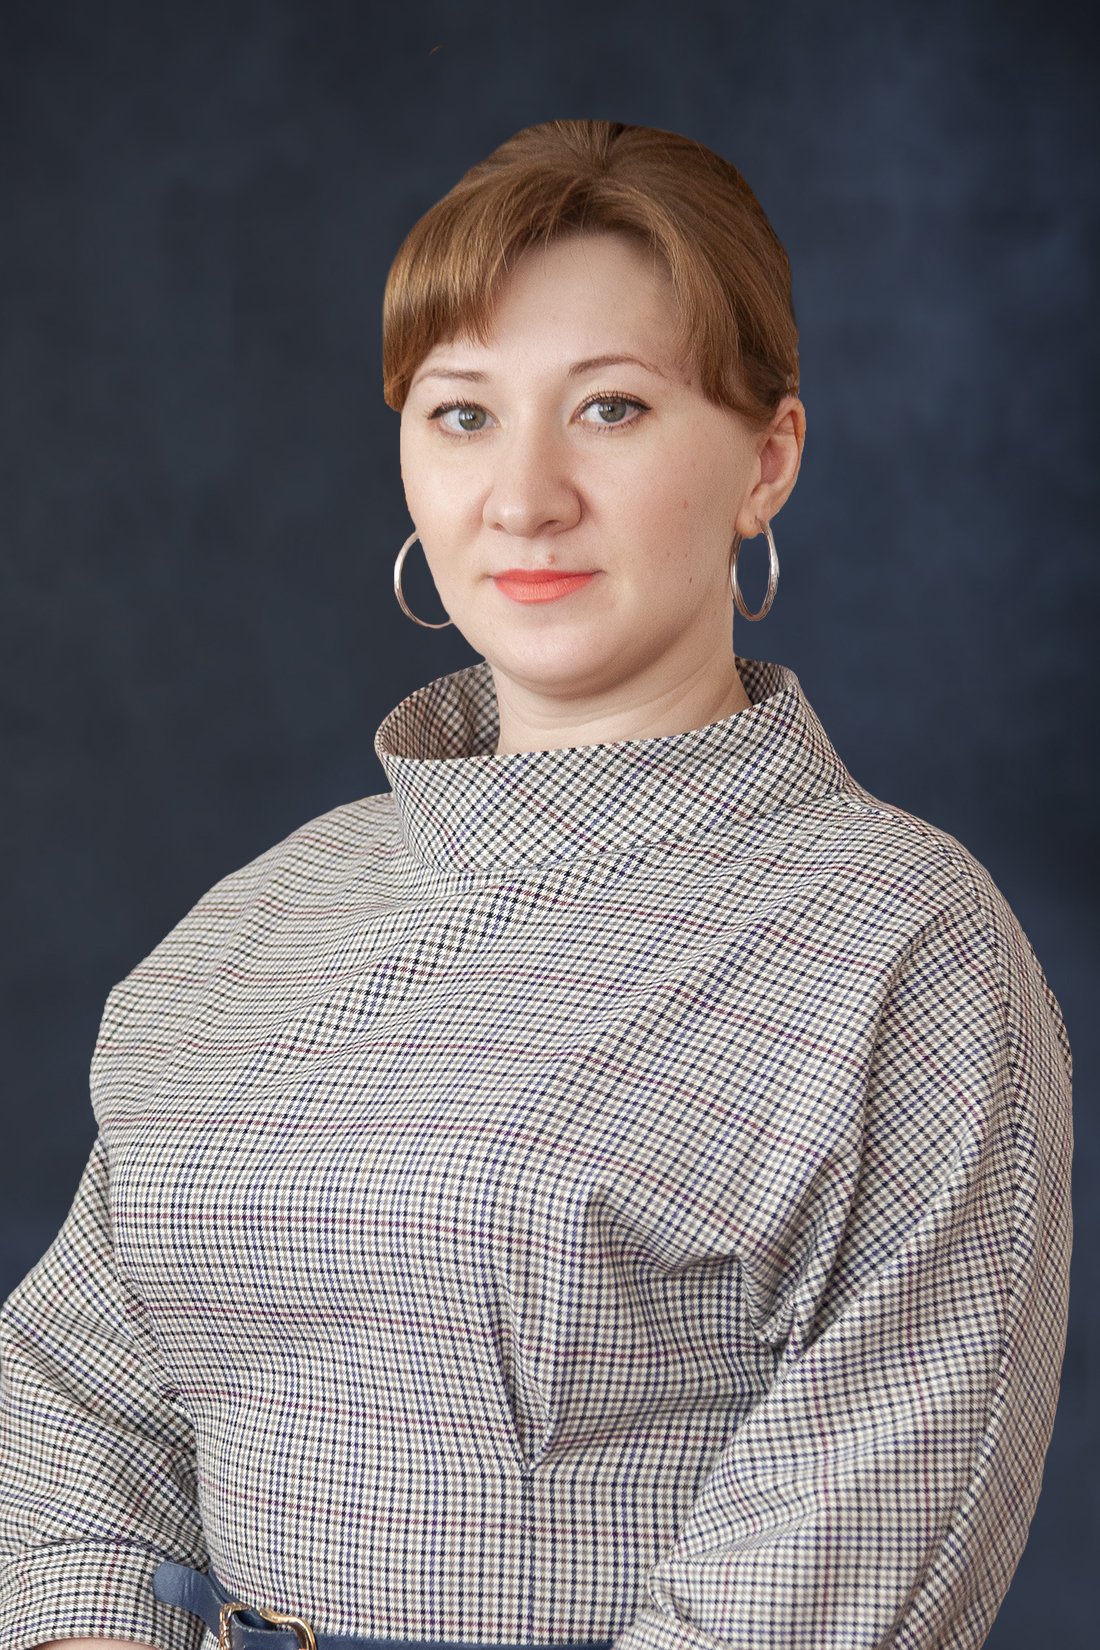 Мельникова Татьяна Александровна.